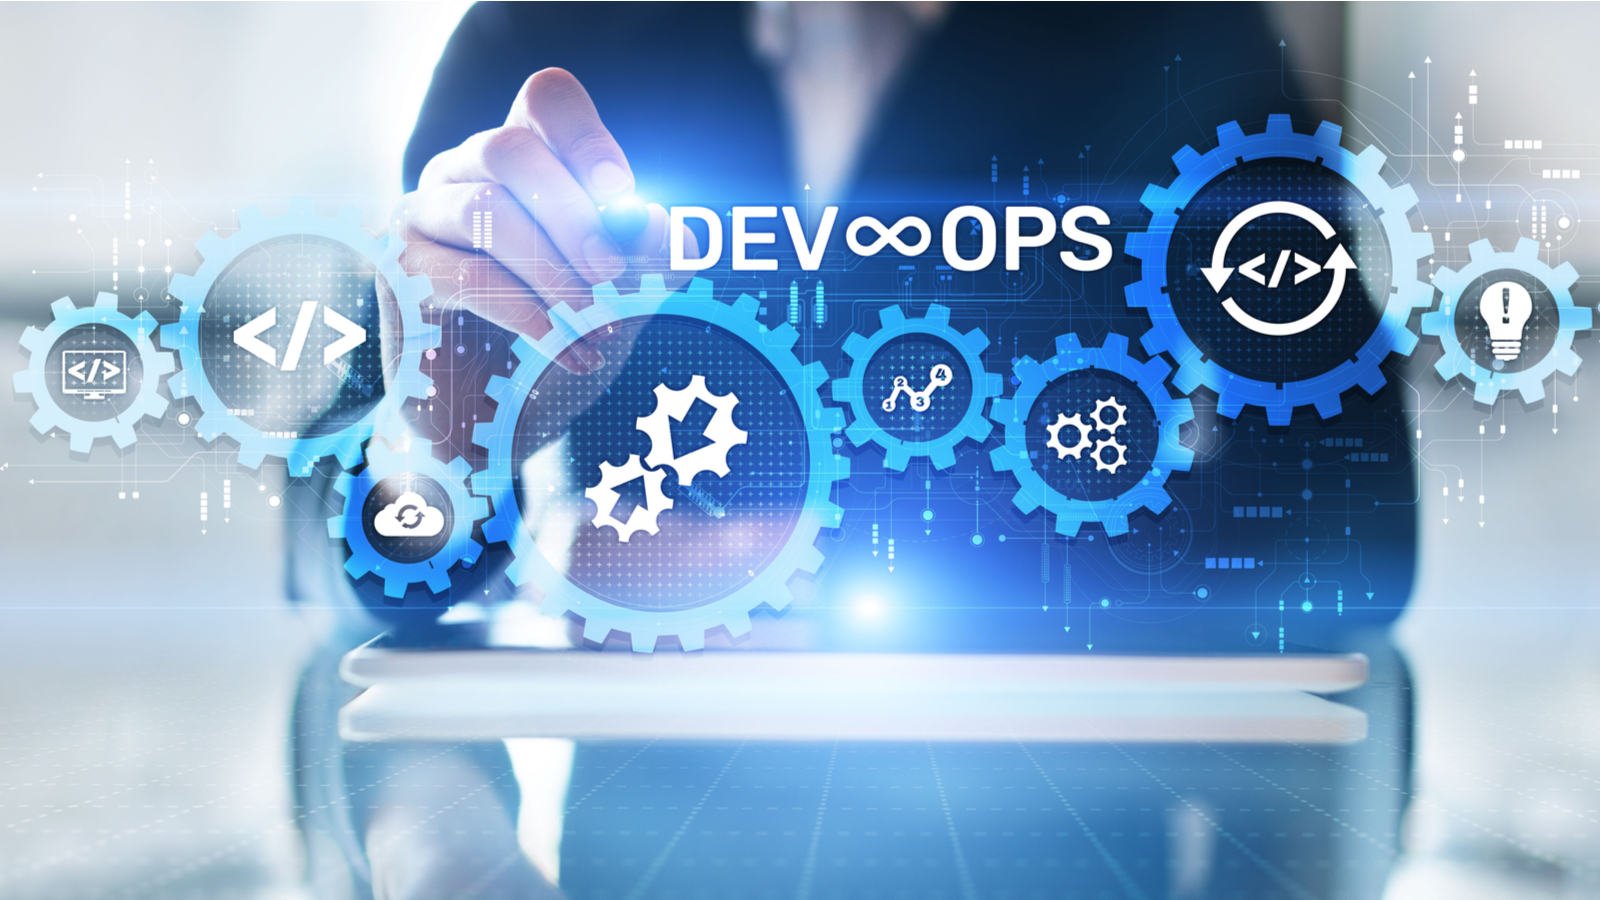 Capire la metodologia DevOps, i vantaggi per le enterprise che puntano sullo sviluppo software